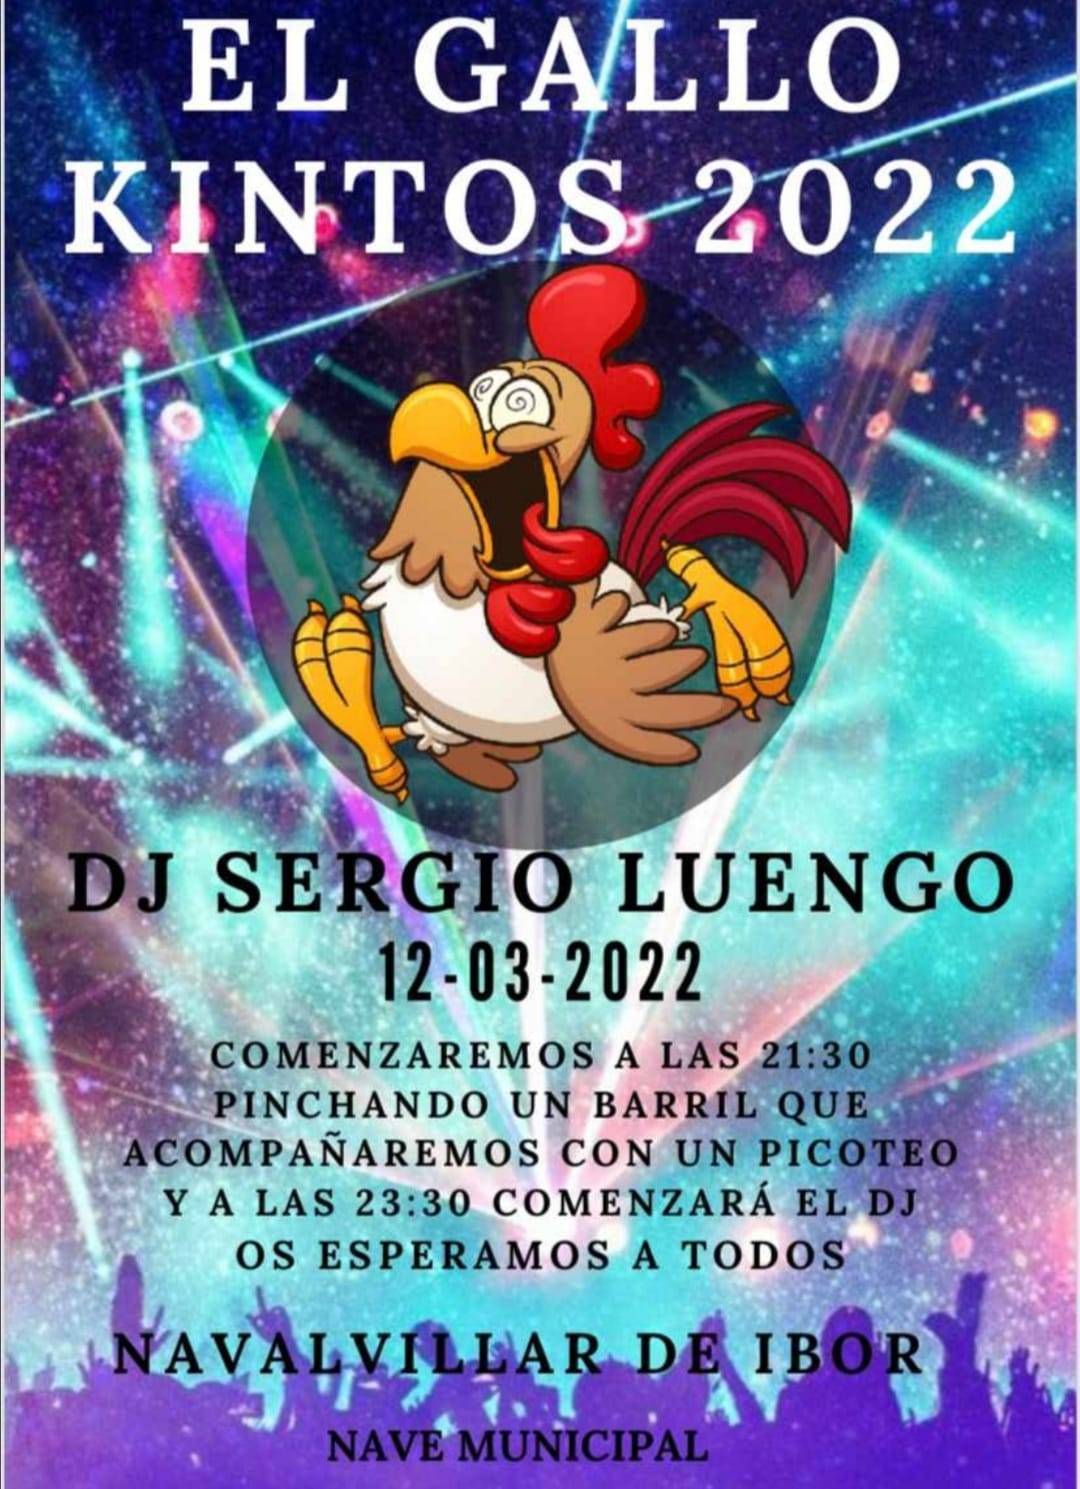 El Gallo Kintos (2022) - Navalvillar de Ibor (Cáceres)